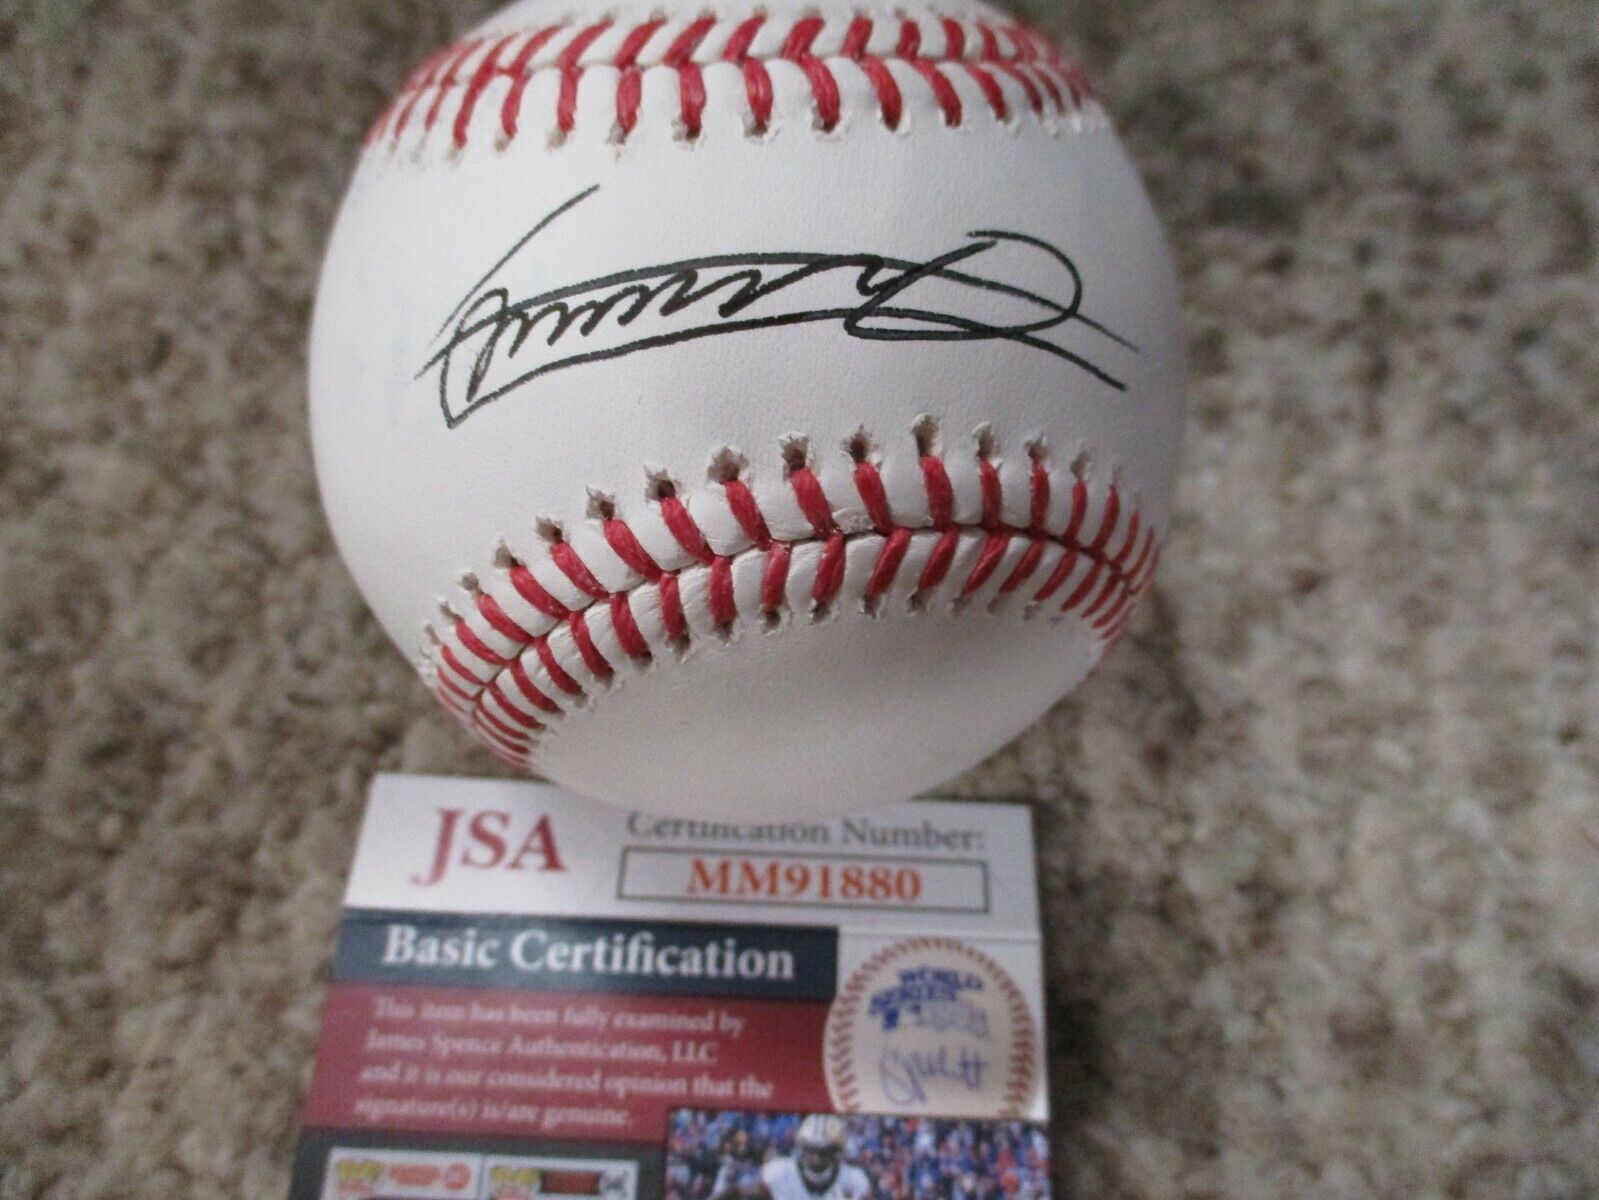 Vladimir Guerrero Jr Blue Jays Signed Official MLB Baseball  JSA MM91880